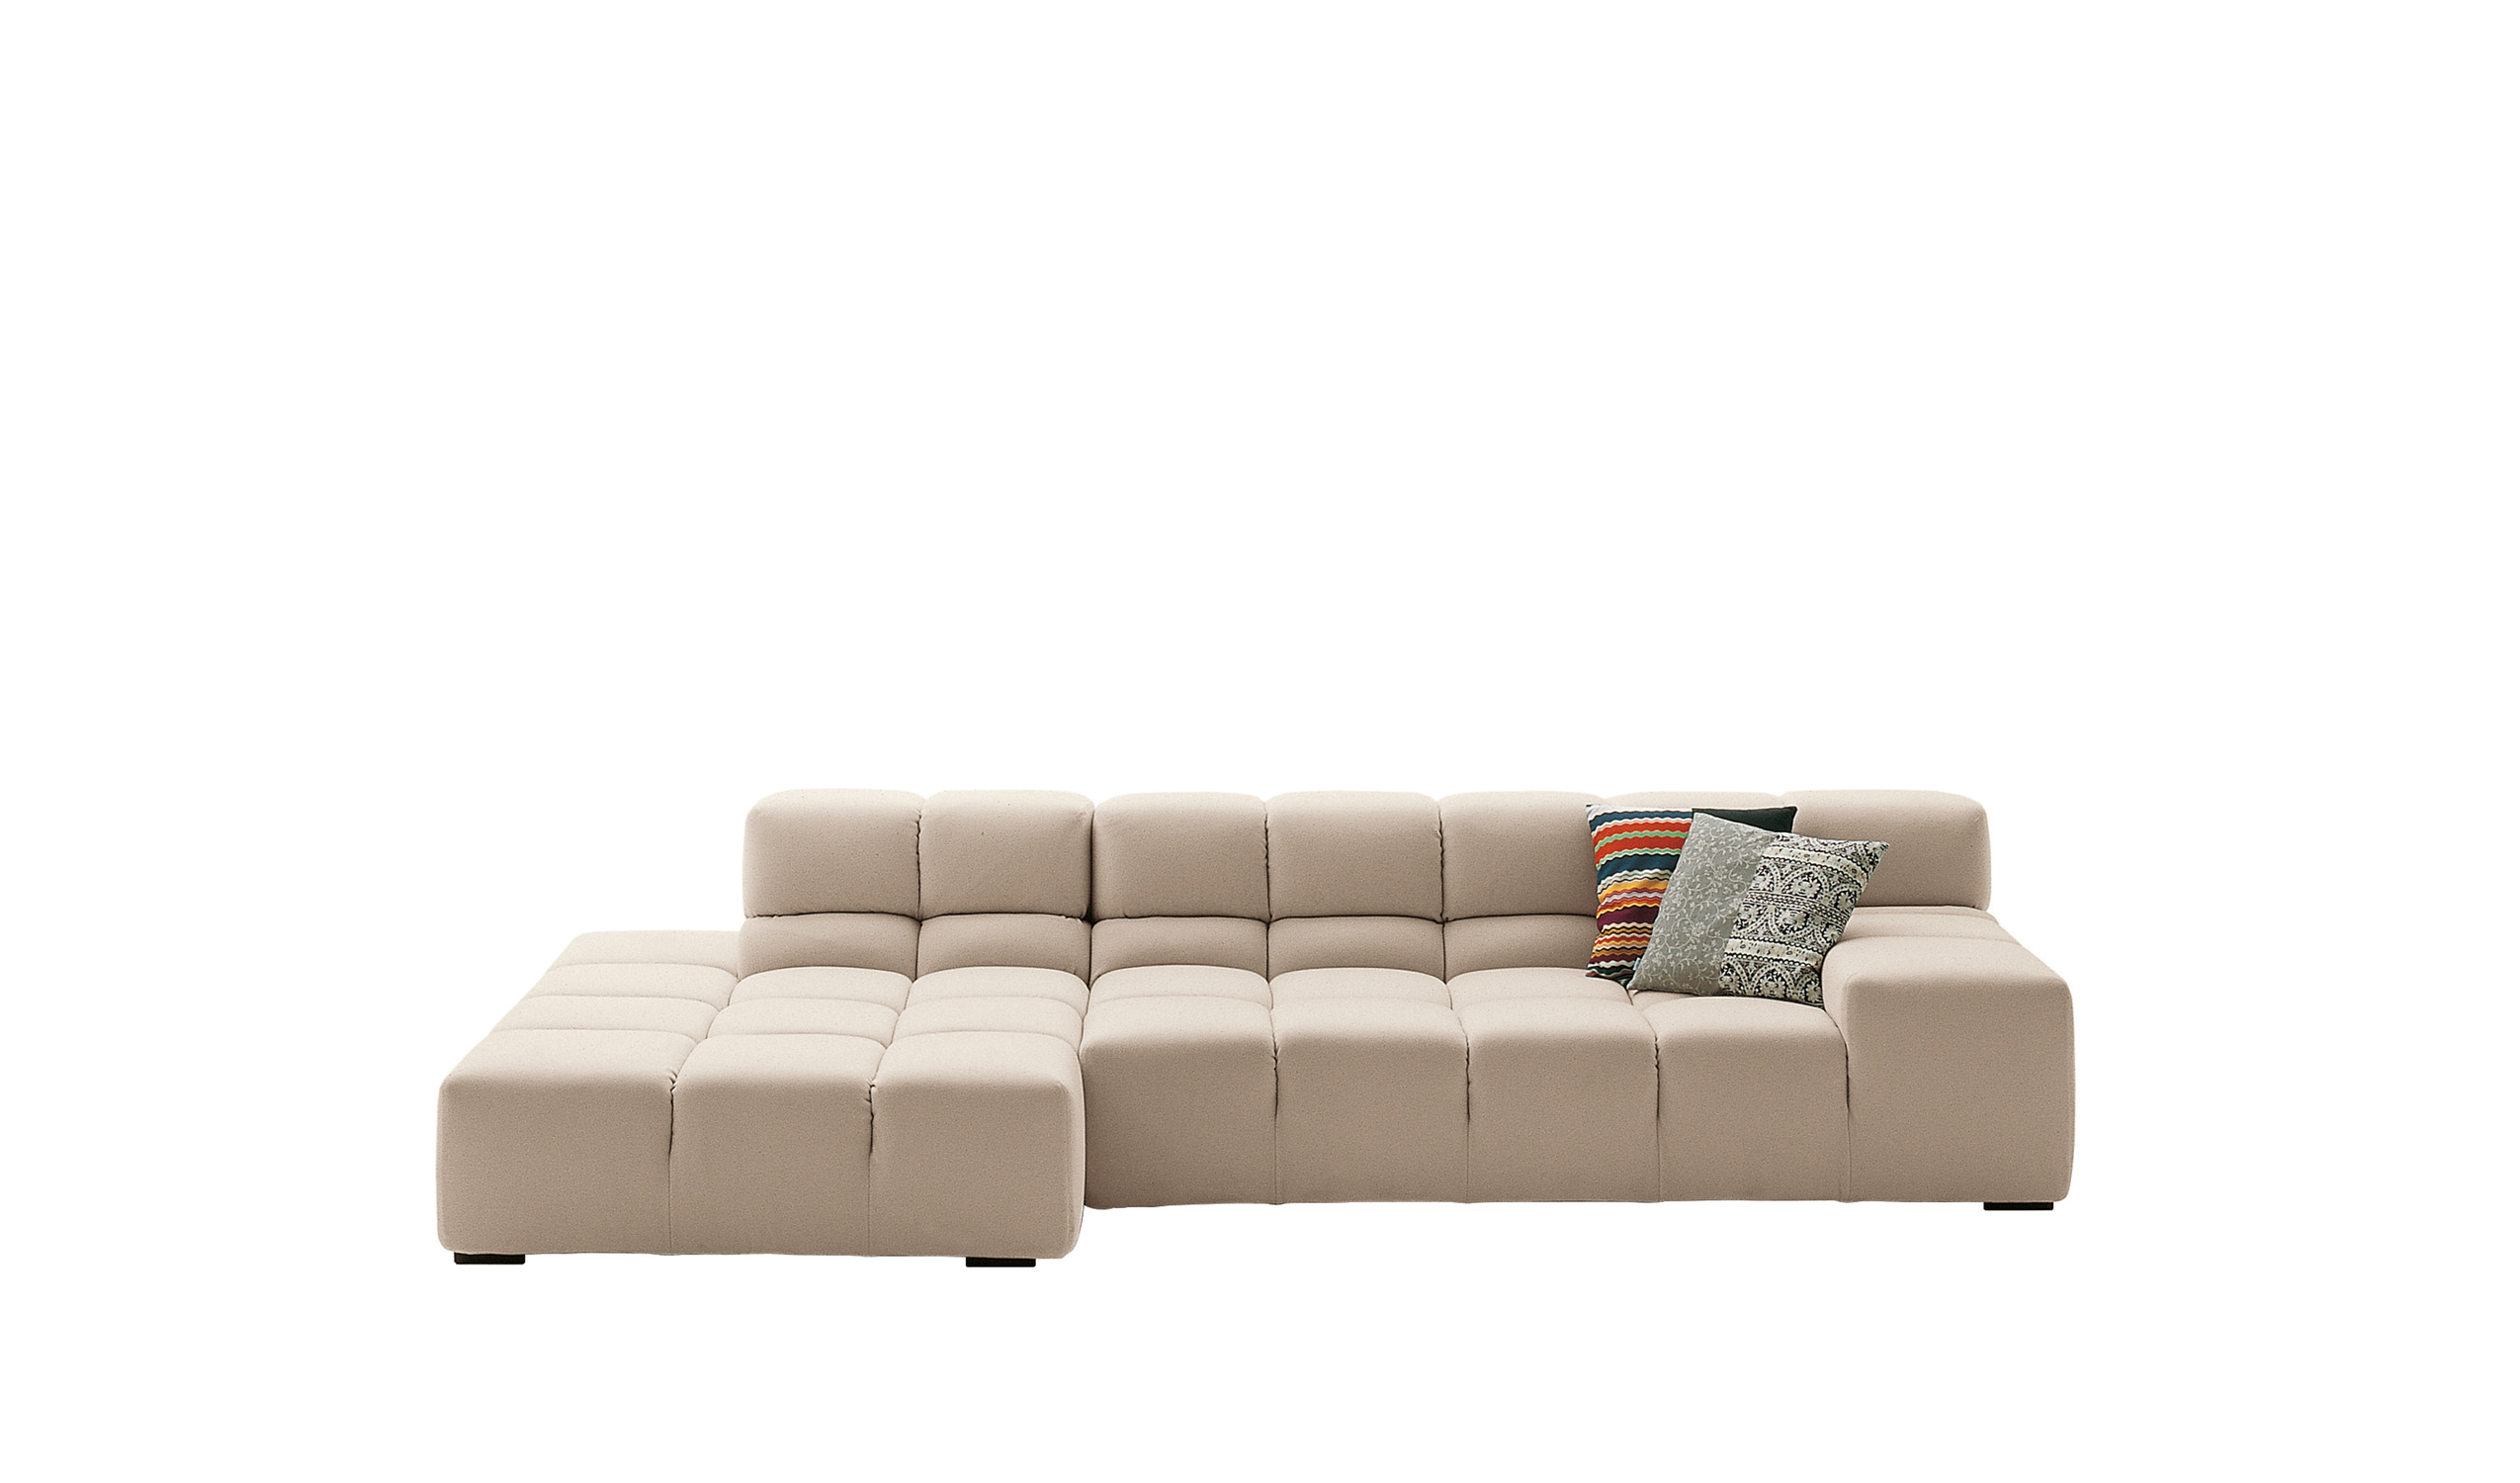 Modern designer italian sofas - Tufty-Time Sofas 2